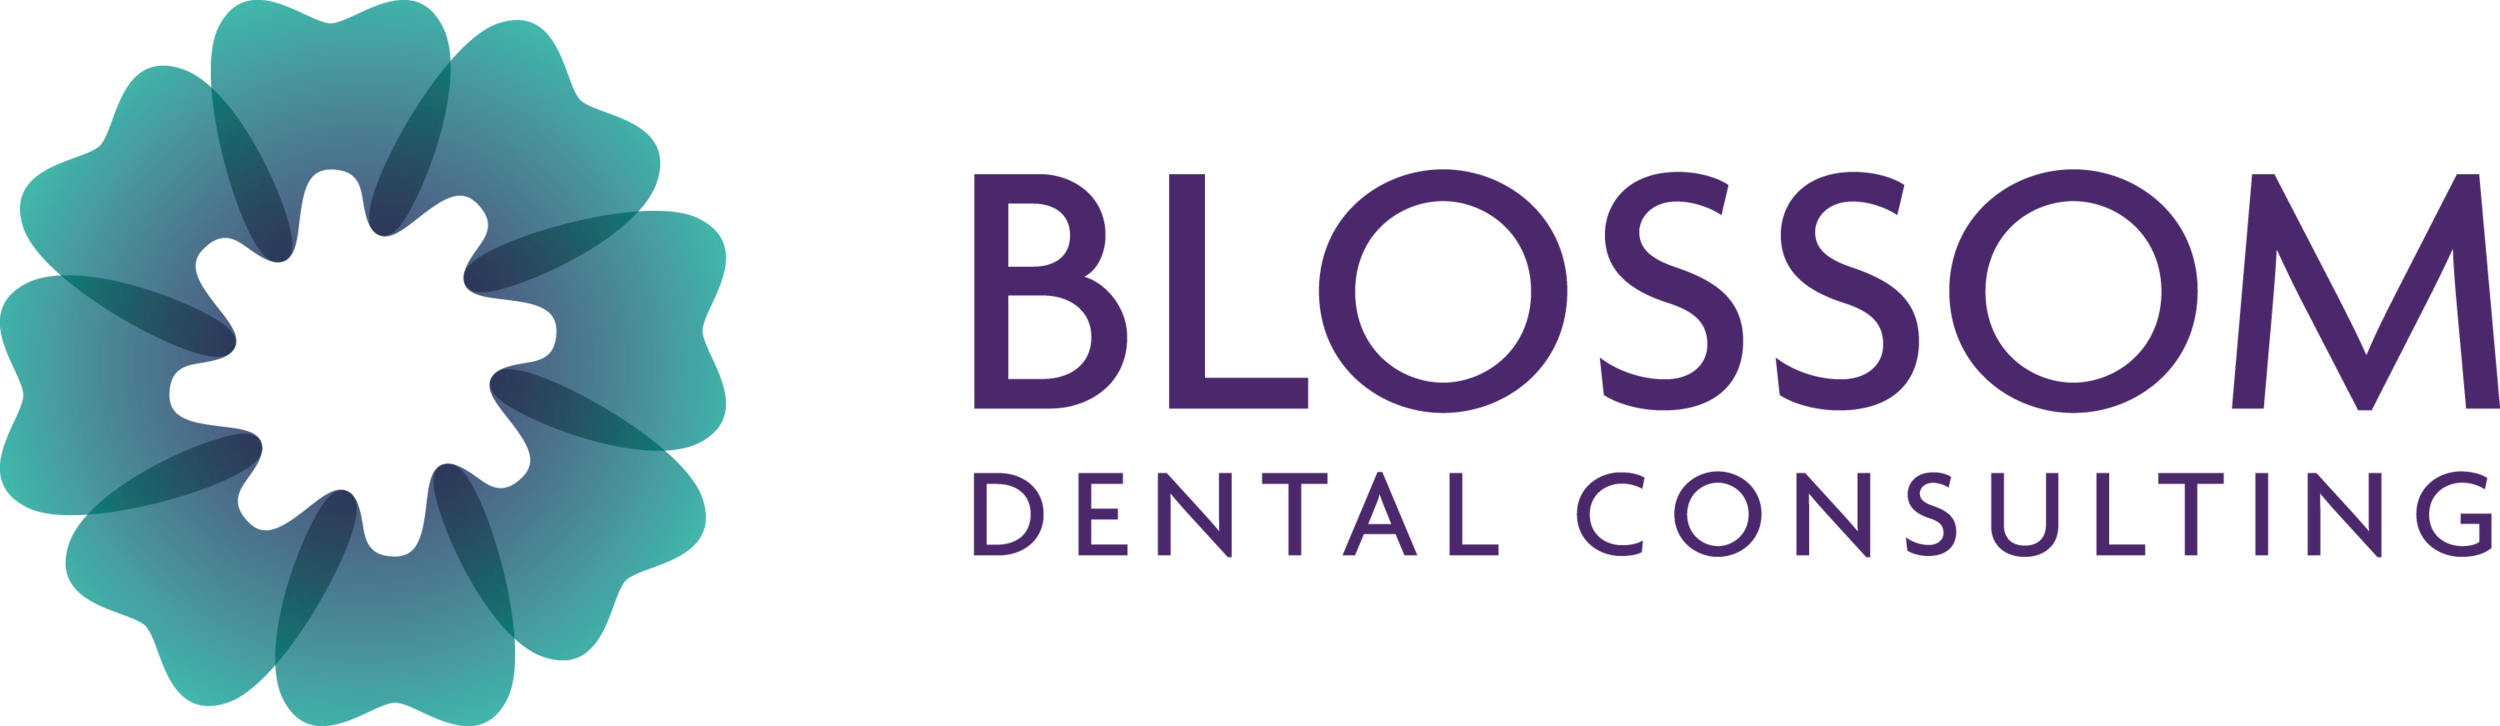 Blossom Dental Consulting